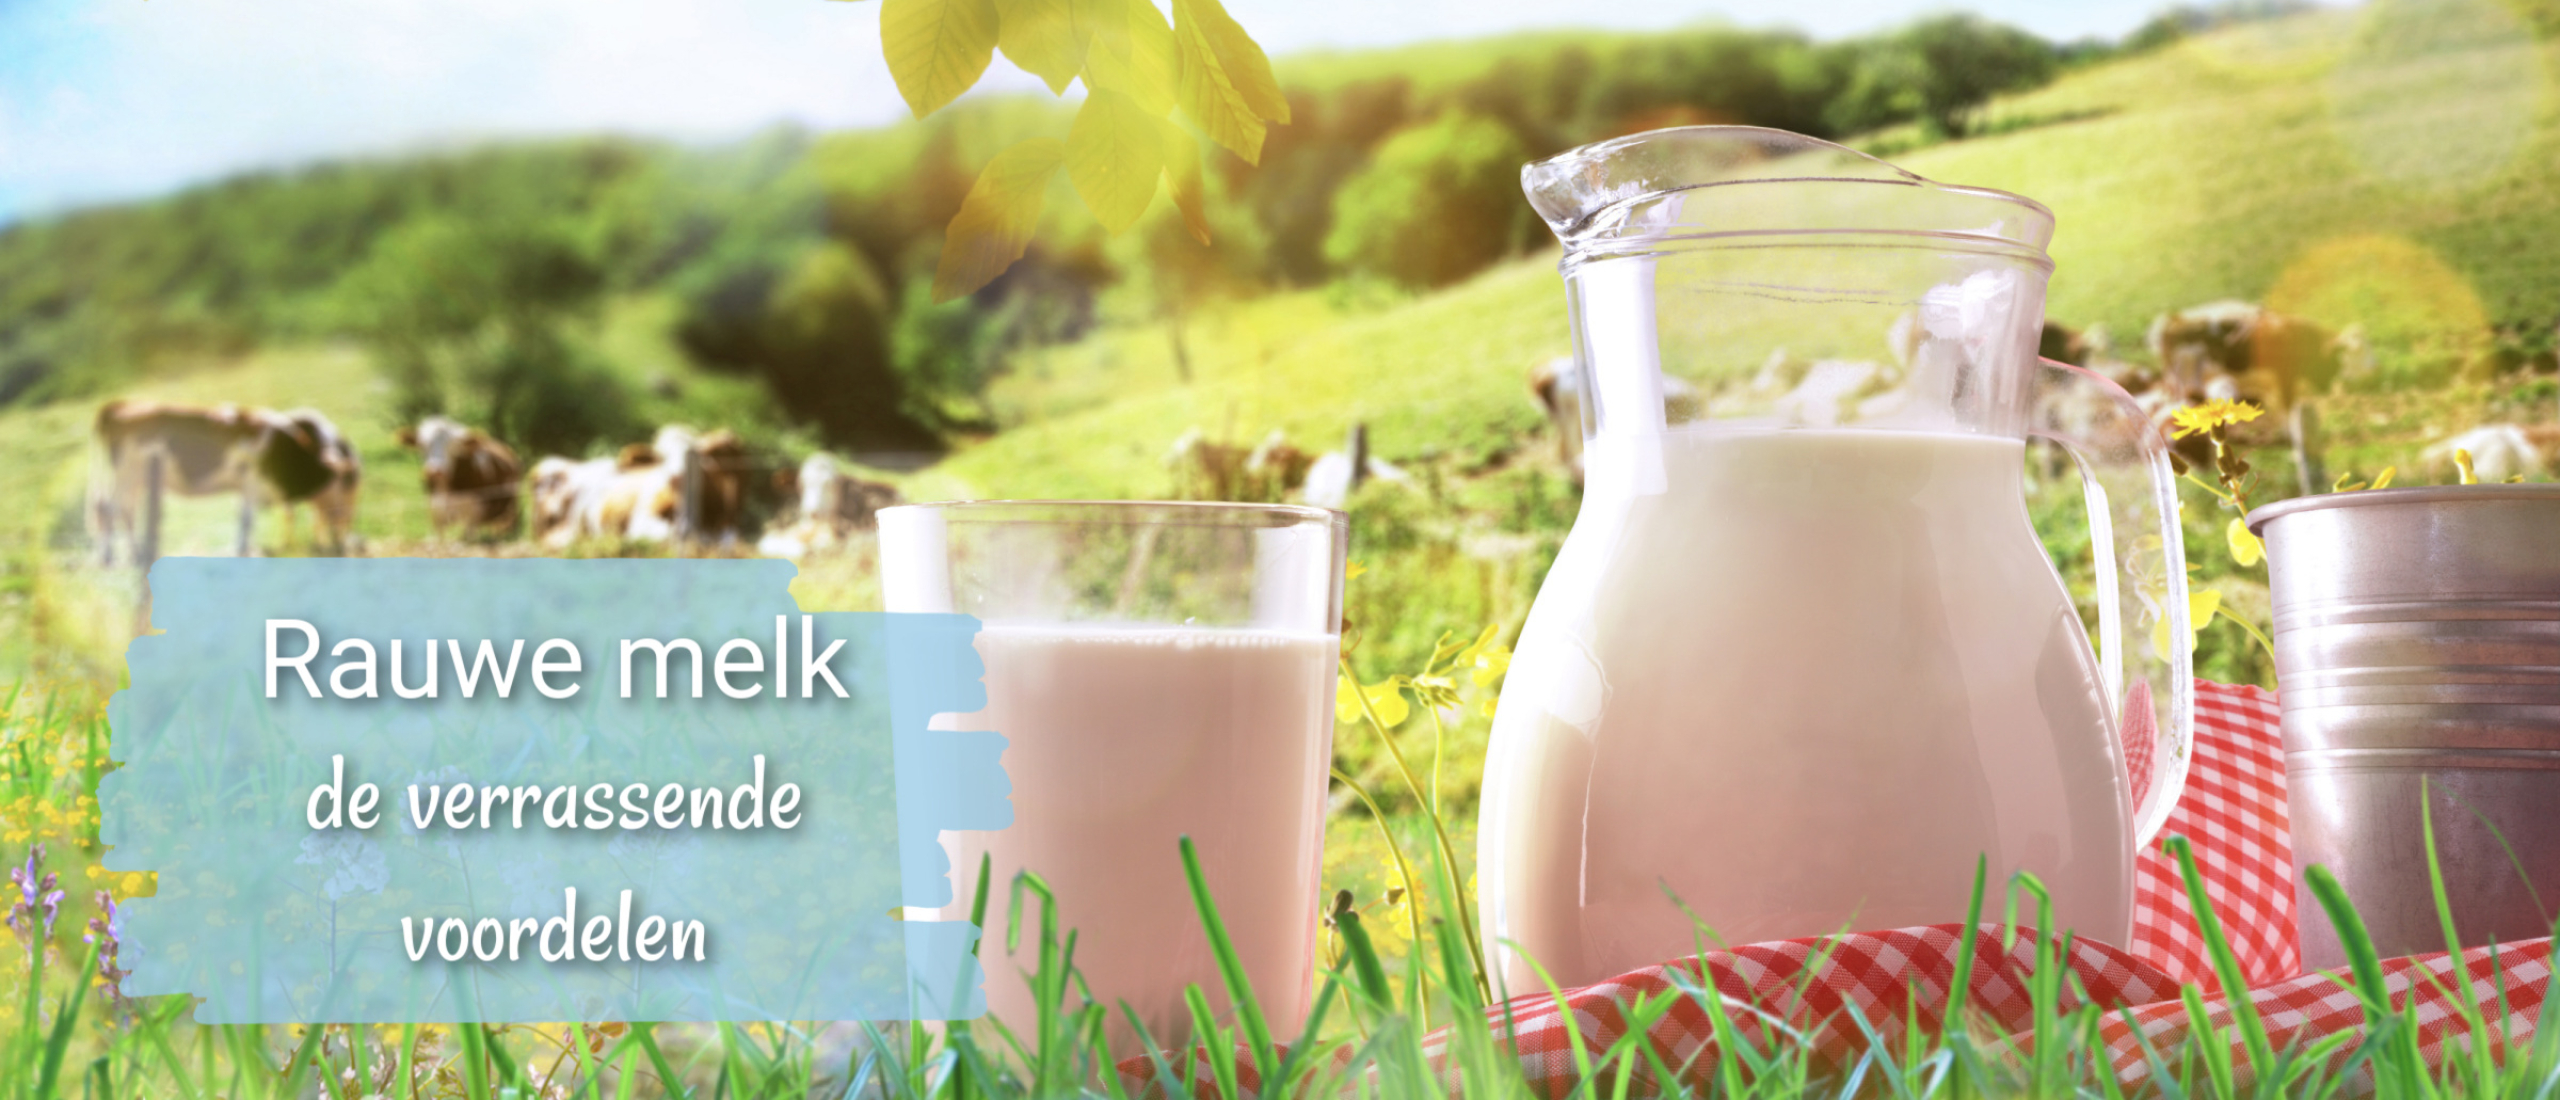 De verrassende voordelen van rauwe melk